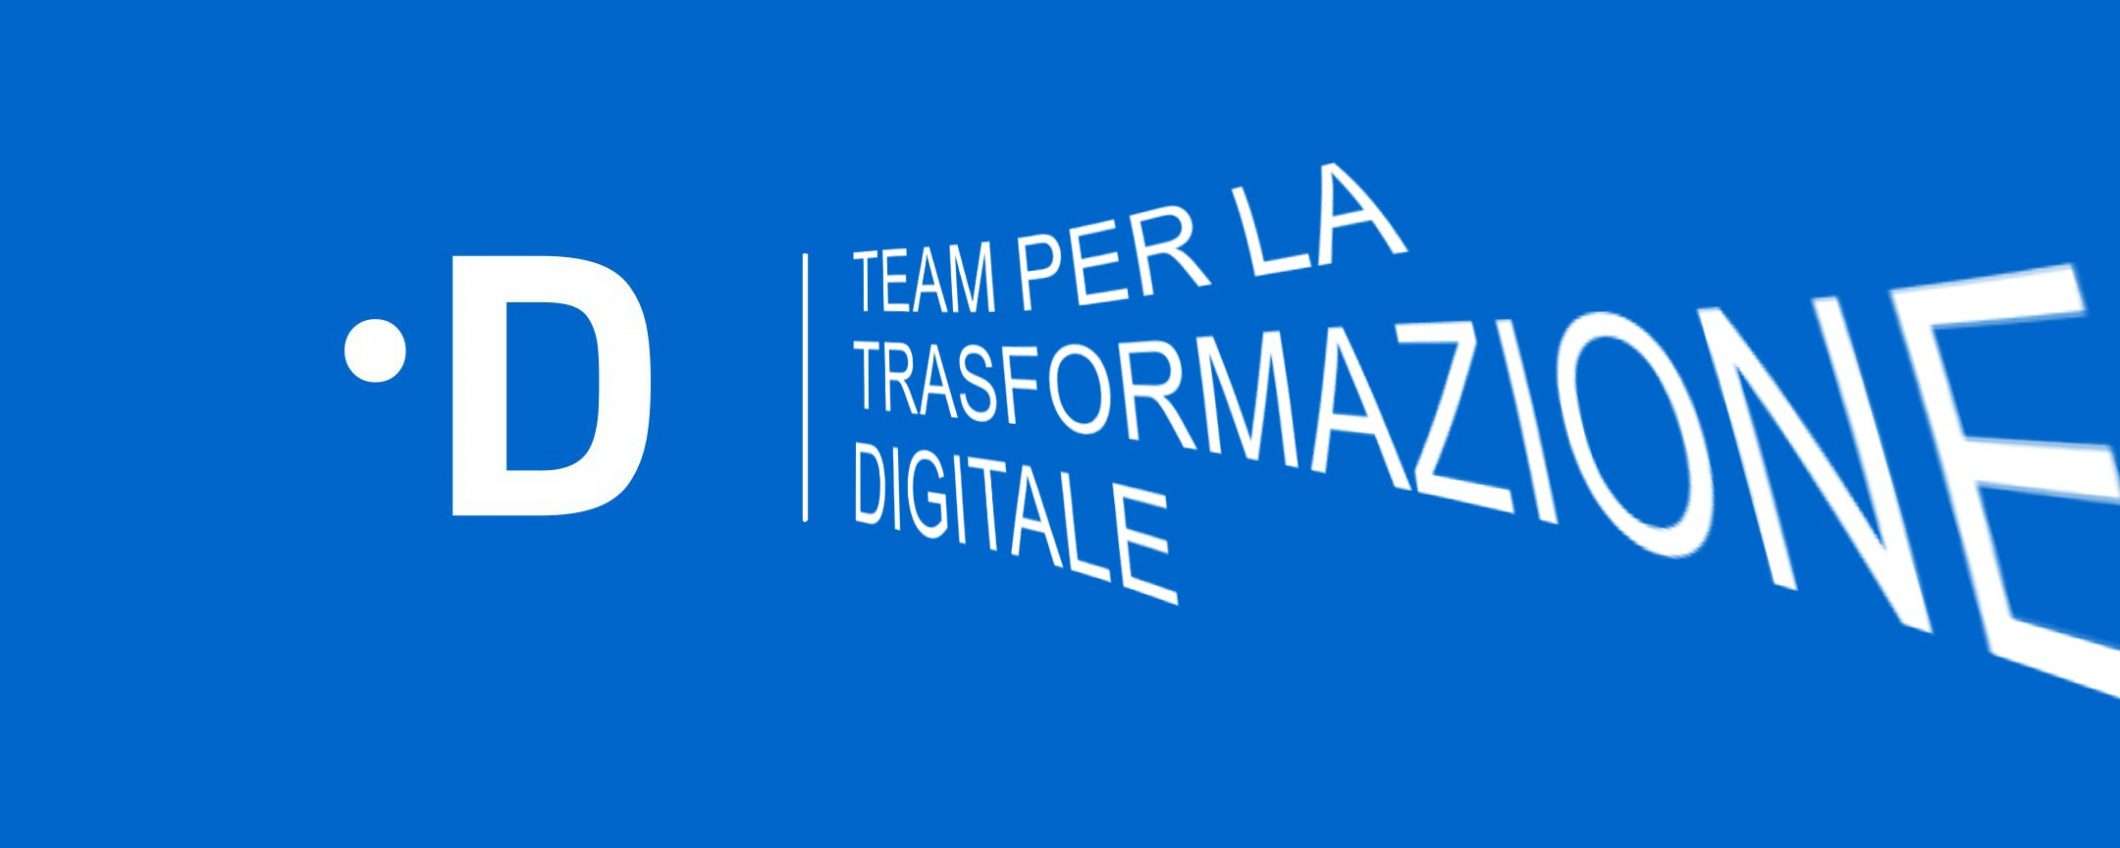 Team per la Trasformazione Digitale